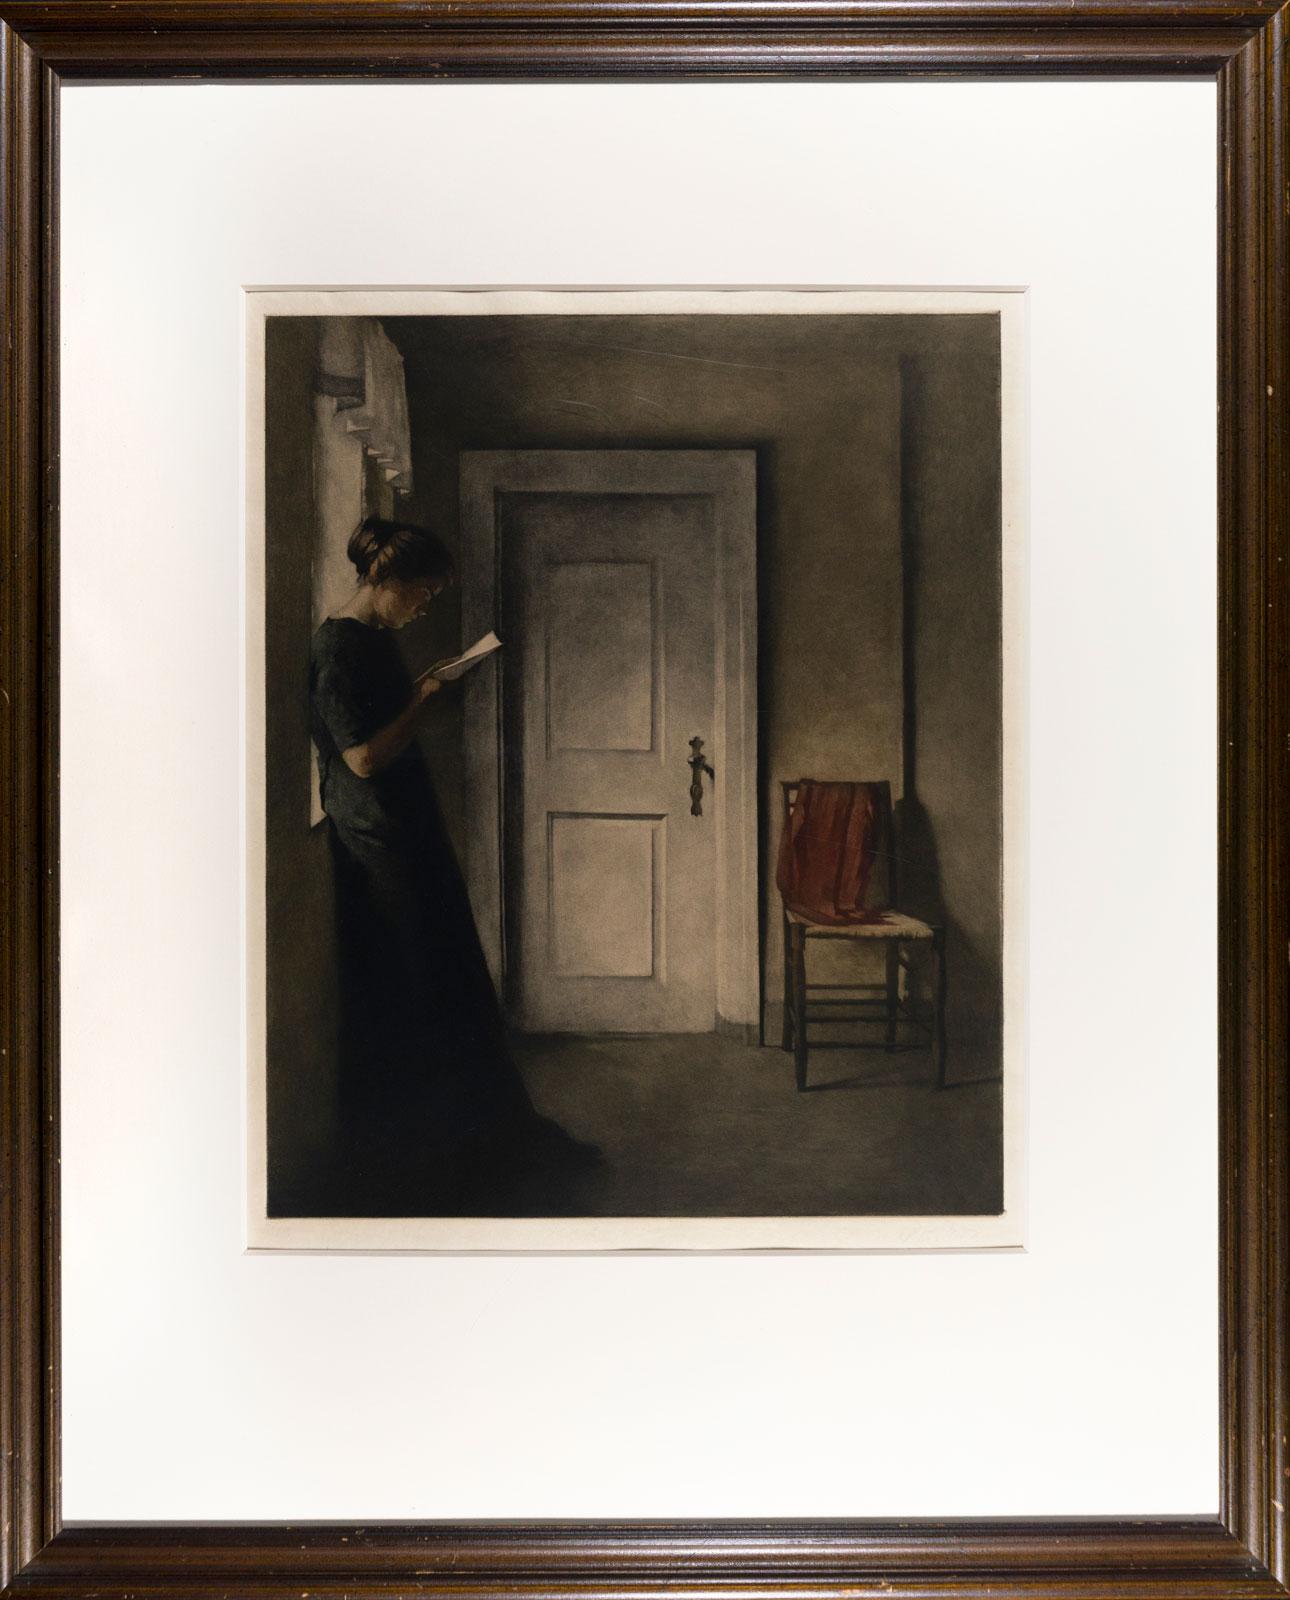 Inneneinrichtung mit rotem Schal (Junge Frau liest in diesem ruhigen, Vermeer-ähnlichen Interieur)  – Print von Peter Ilsted